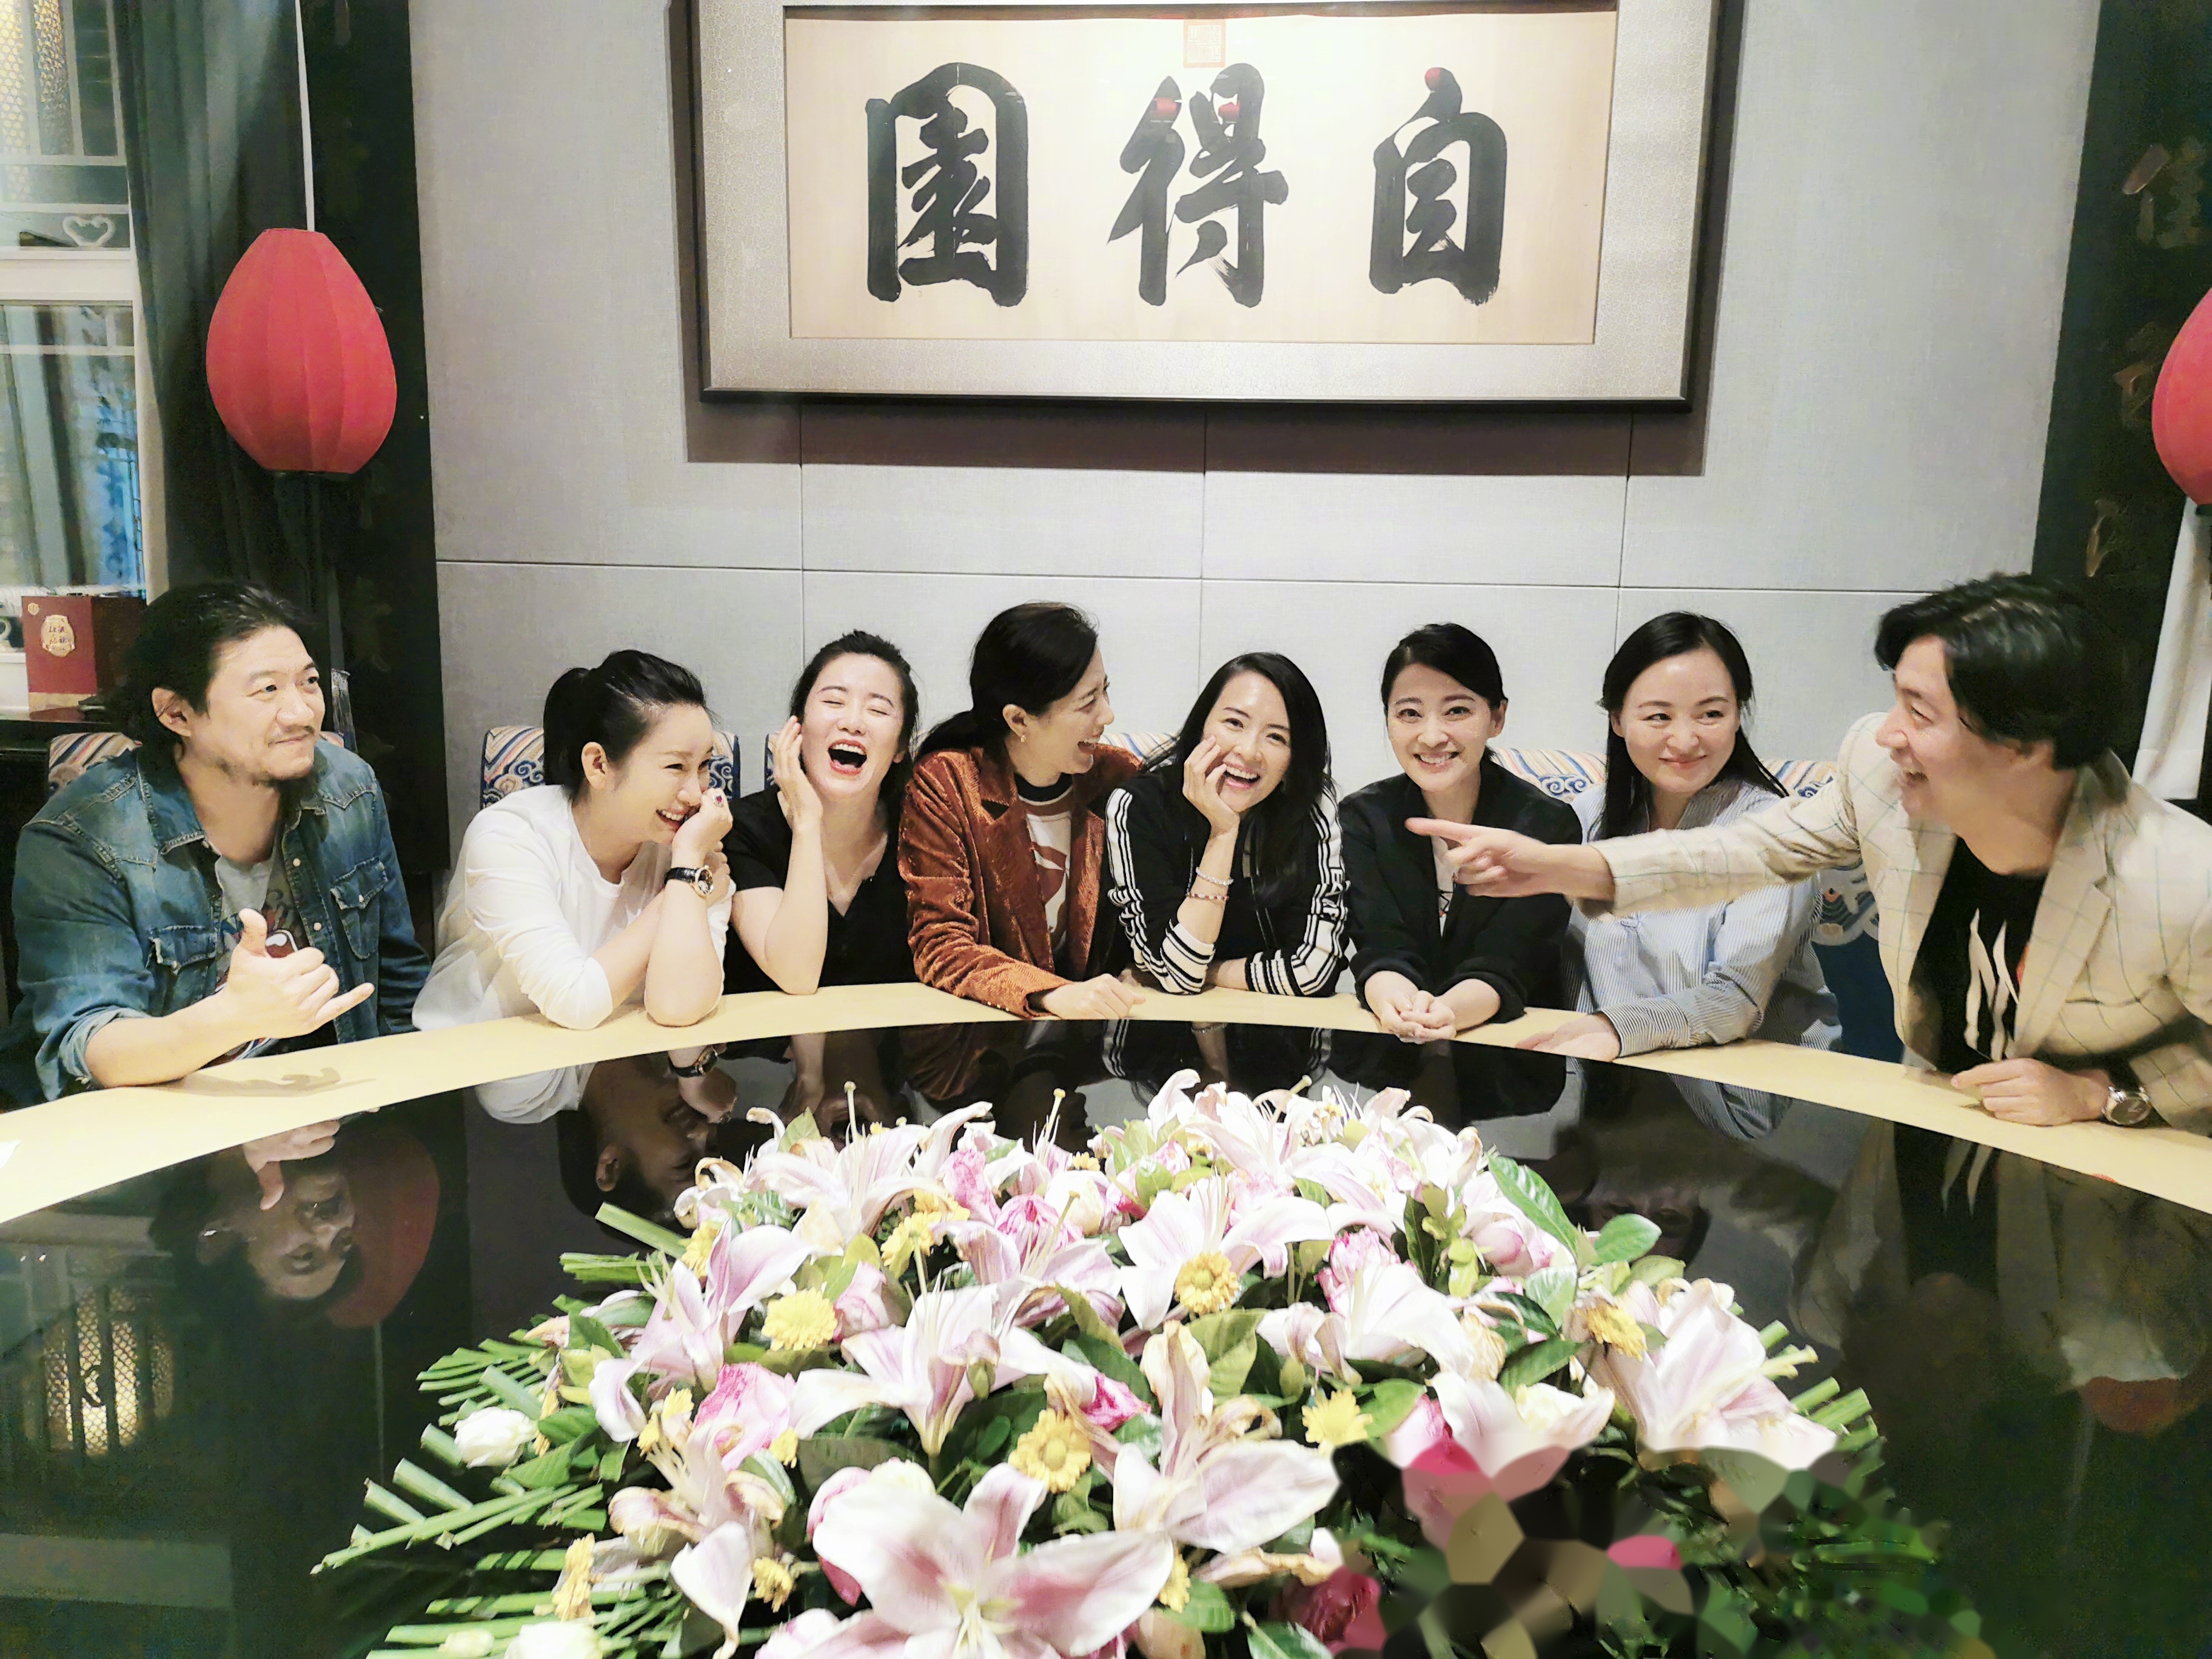 章子怡在微博上晒出了中央戏剧学院96级同学聚会的合影,陈明昊,秦海璐